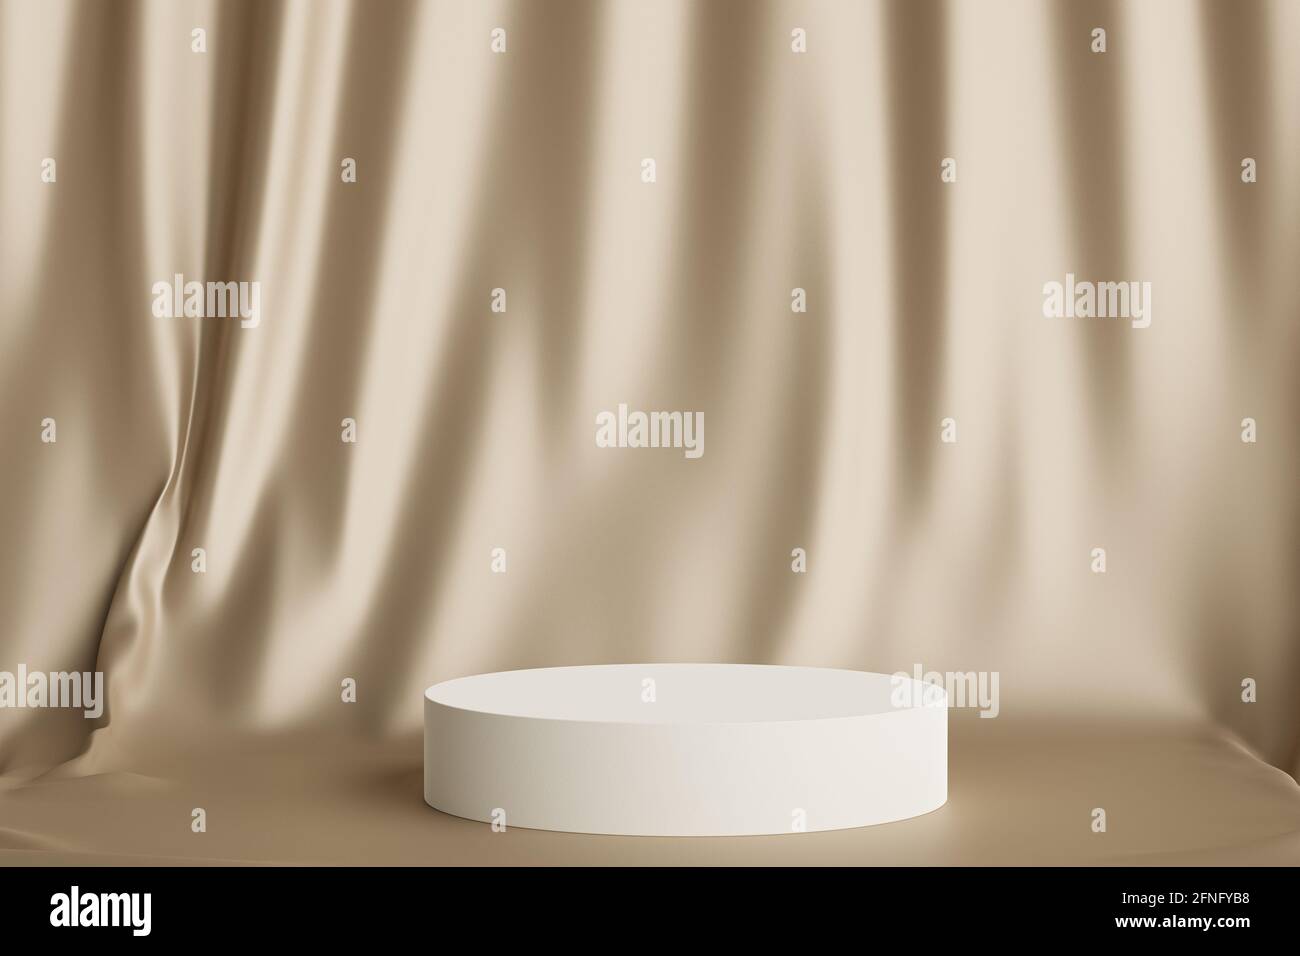 Podium ou socle en forme de cylindre pour les produits ou la publicité sur fond de rideaux beiges brillants, rendu d'illustration 3D minimal Banque D'Images